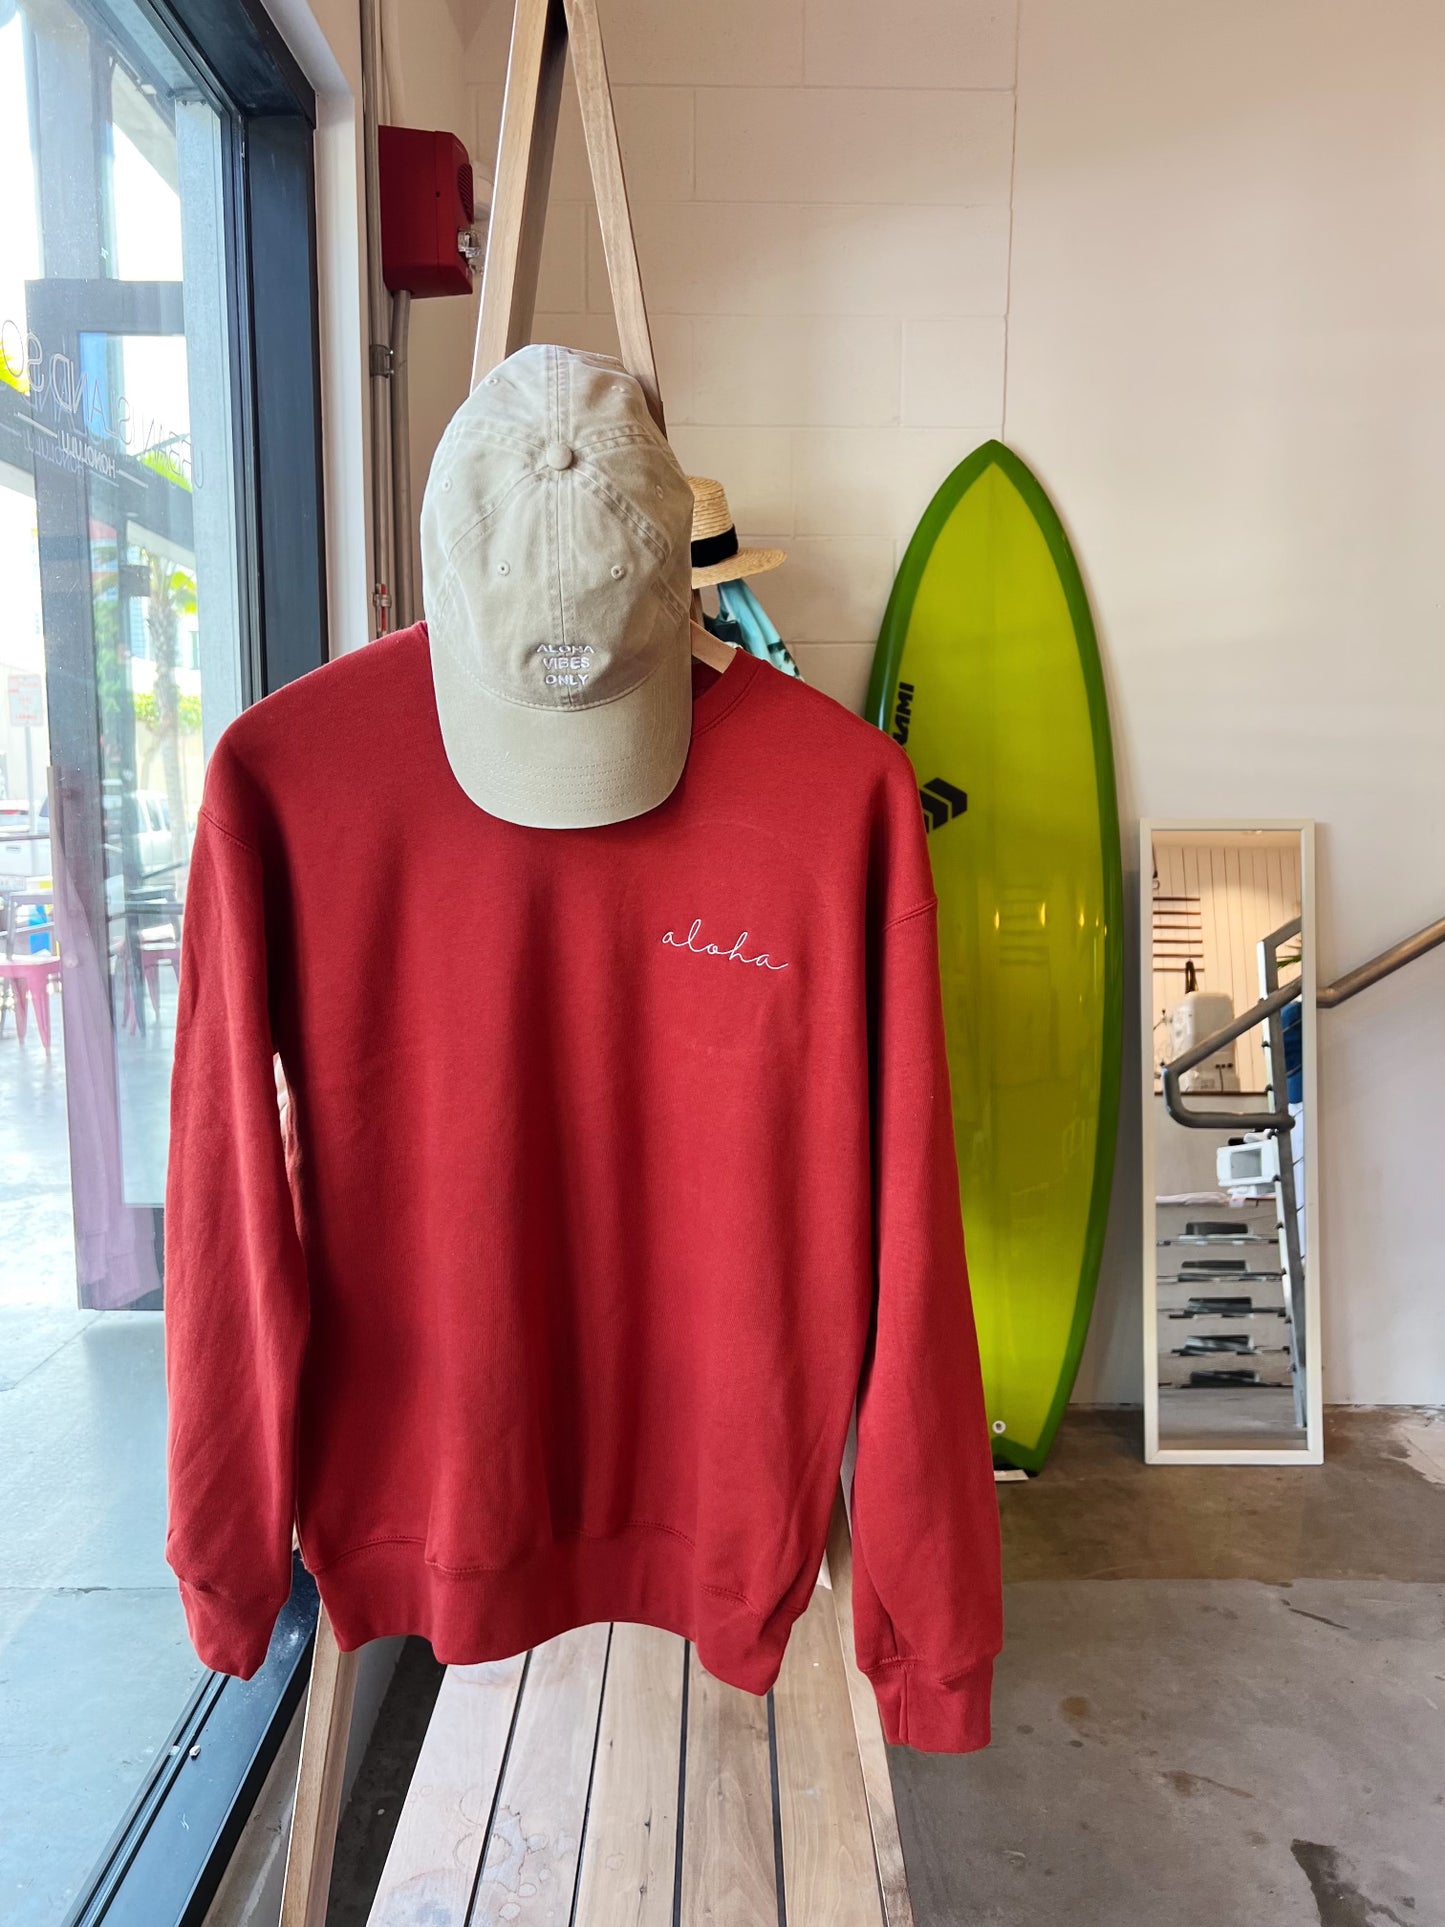 HI SURF "Aloha" long sleeve sweater